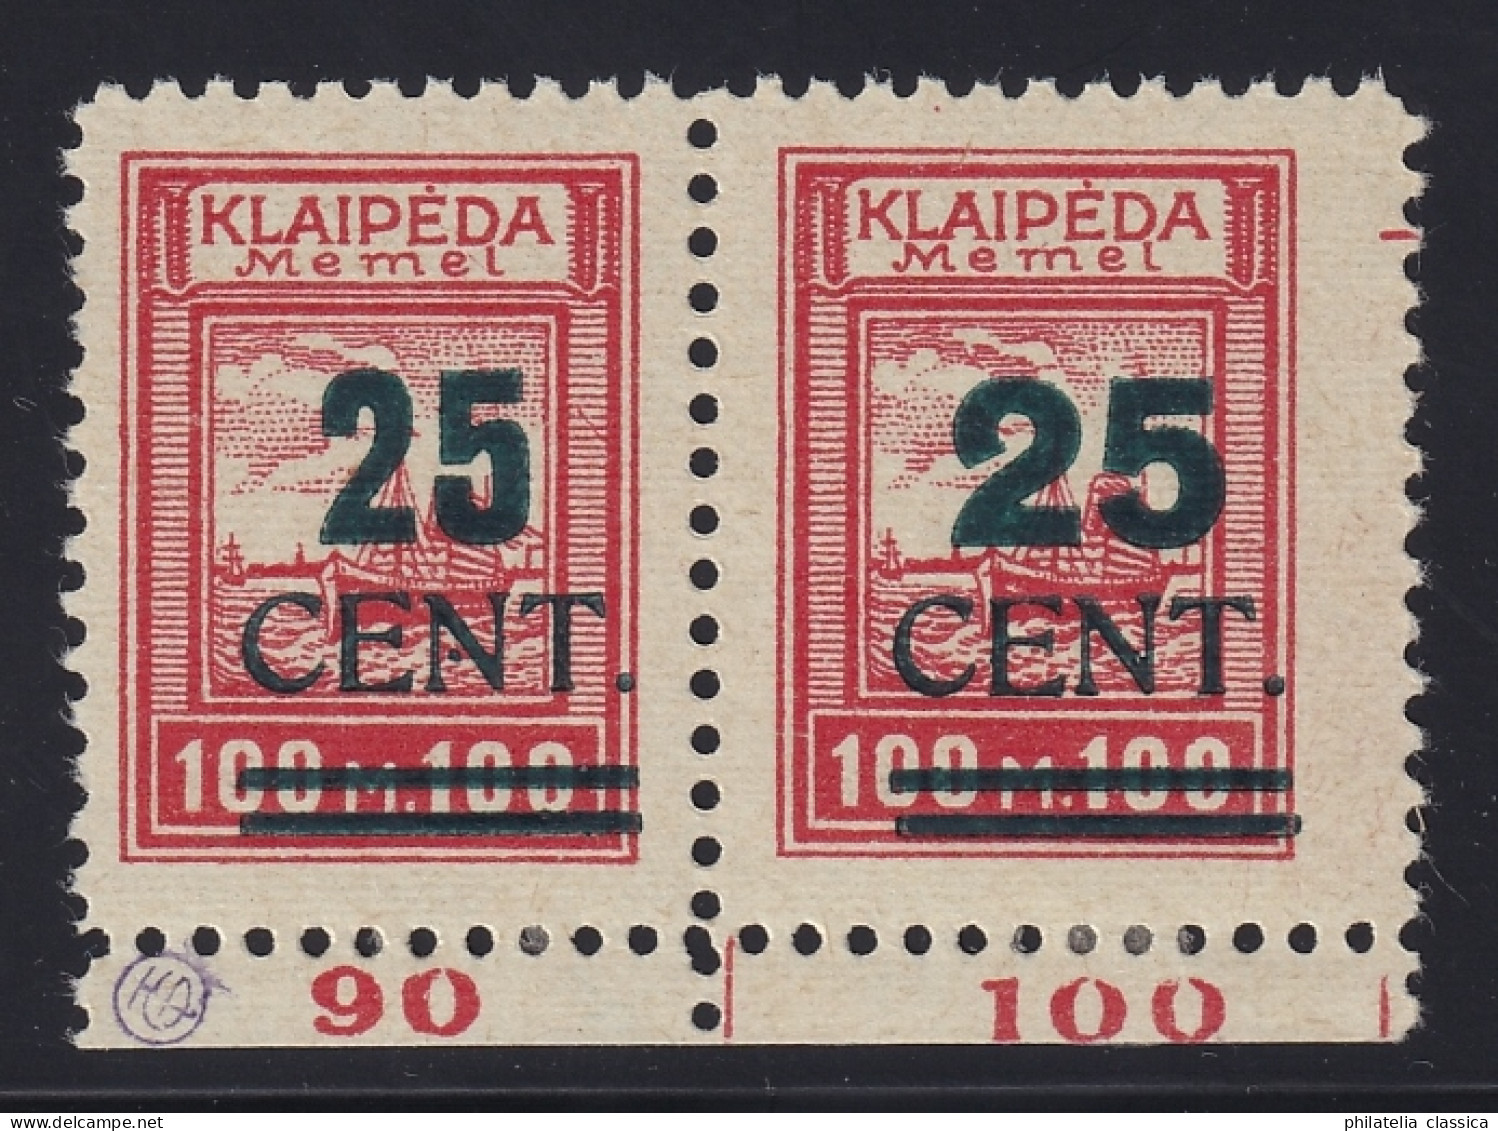 MEMELGEBIET 235 W1 (Typenpaar I+II) Grün-Aufdruck 25 C. Originalgummi, 2000,-€ - Memel (Klaipeda) 1923